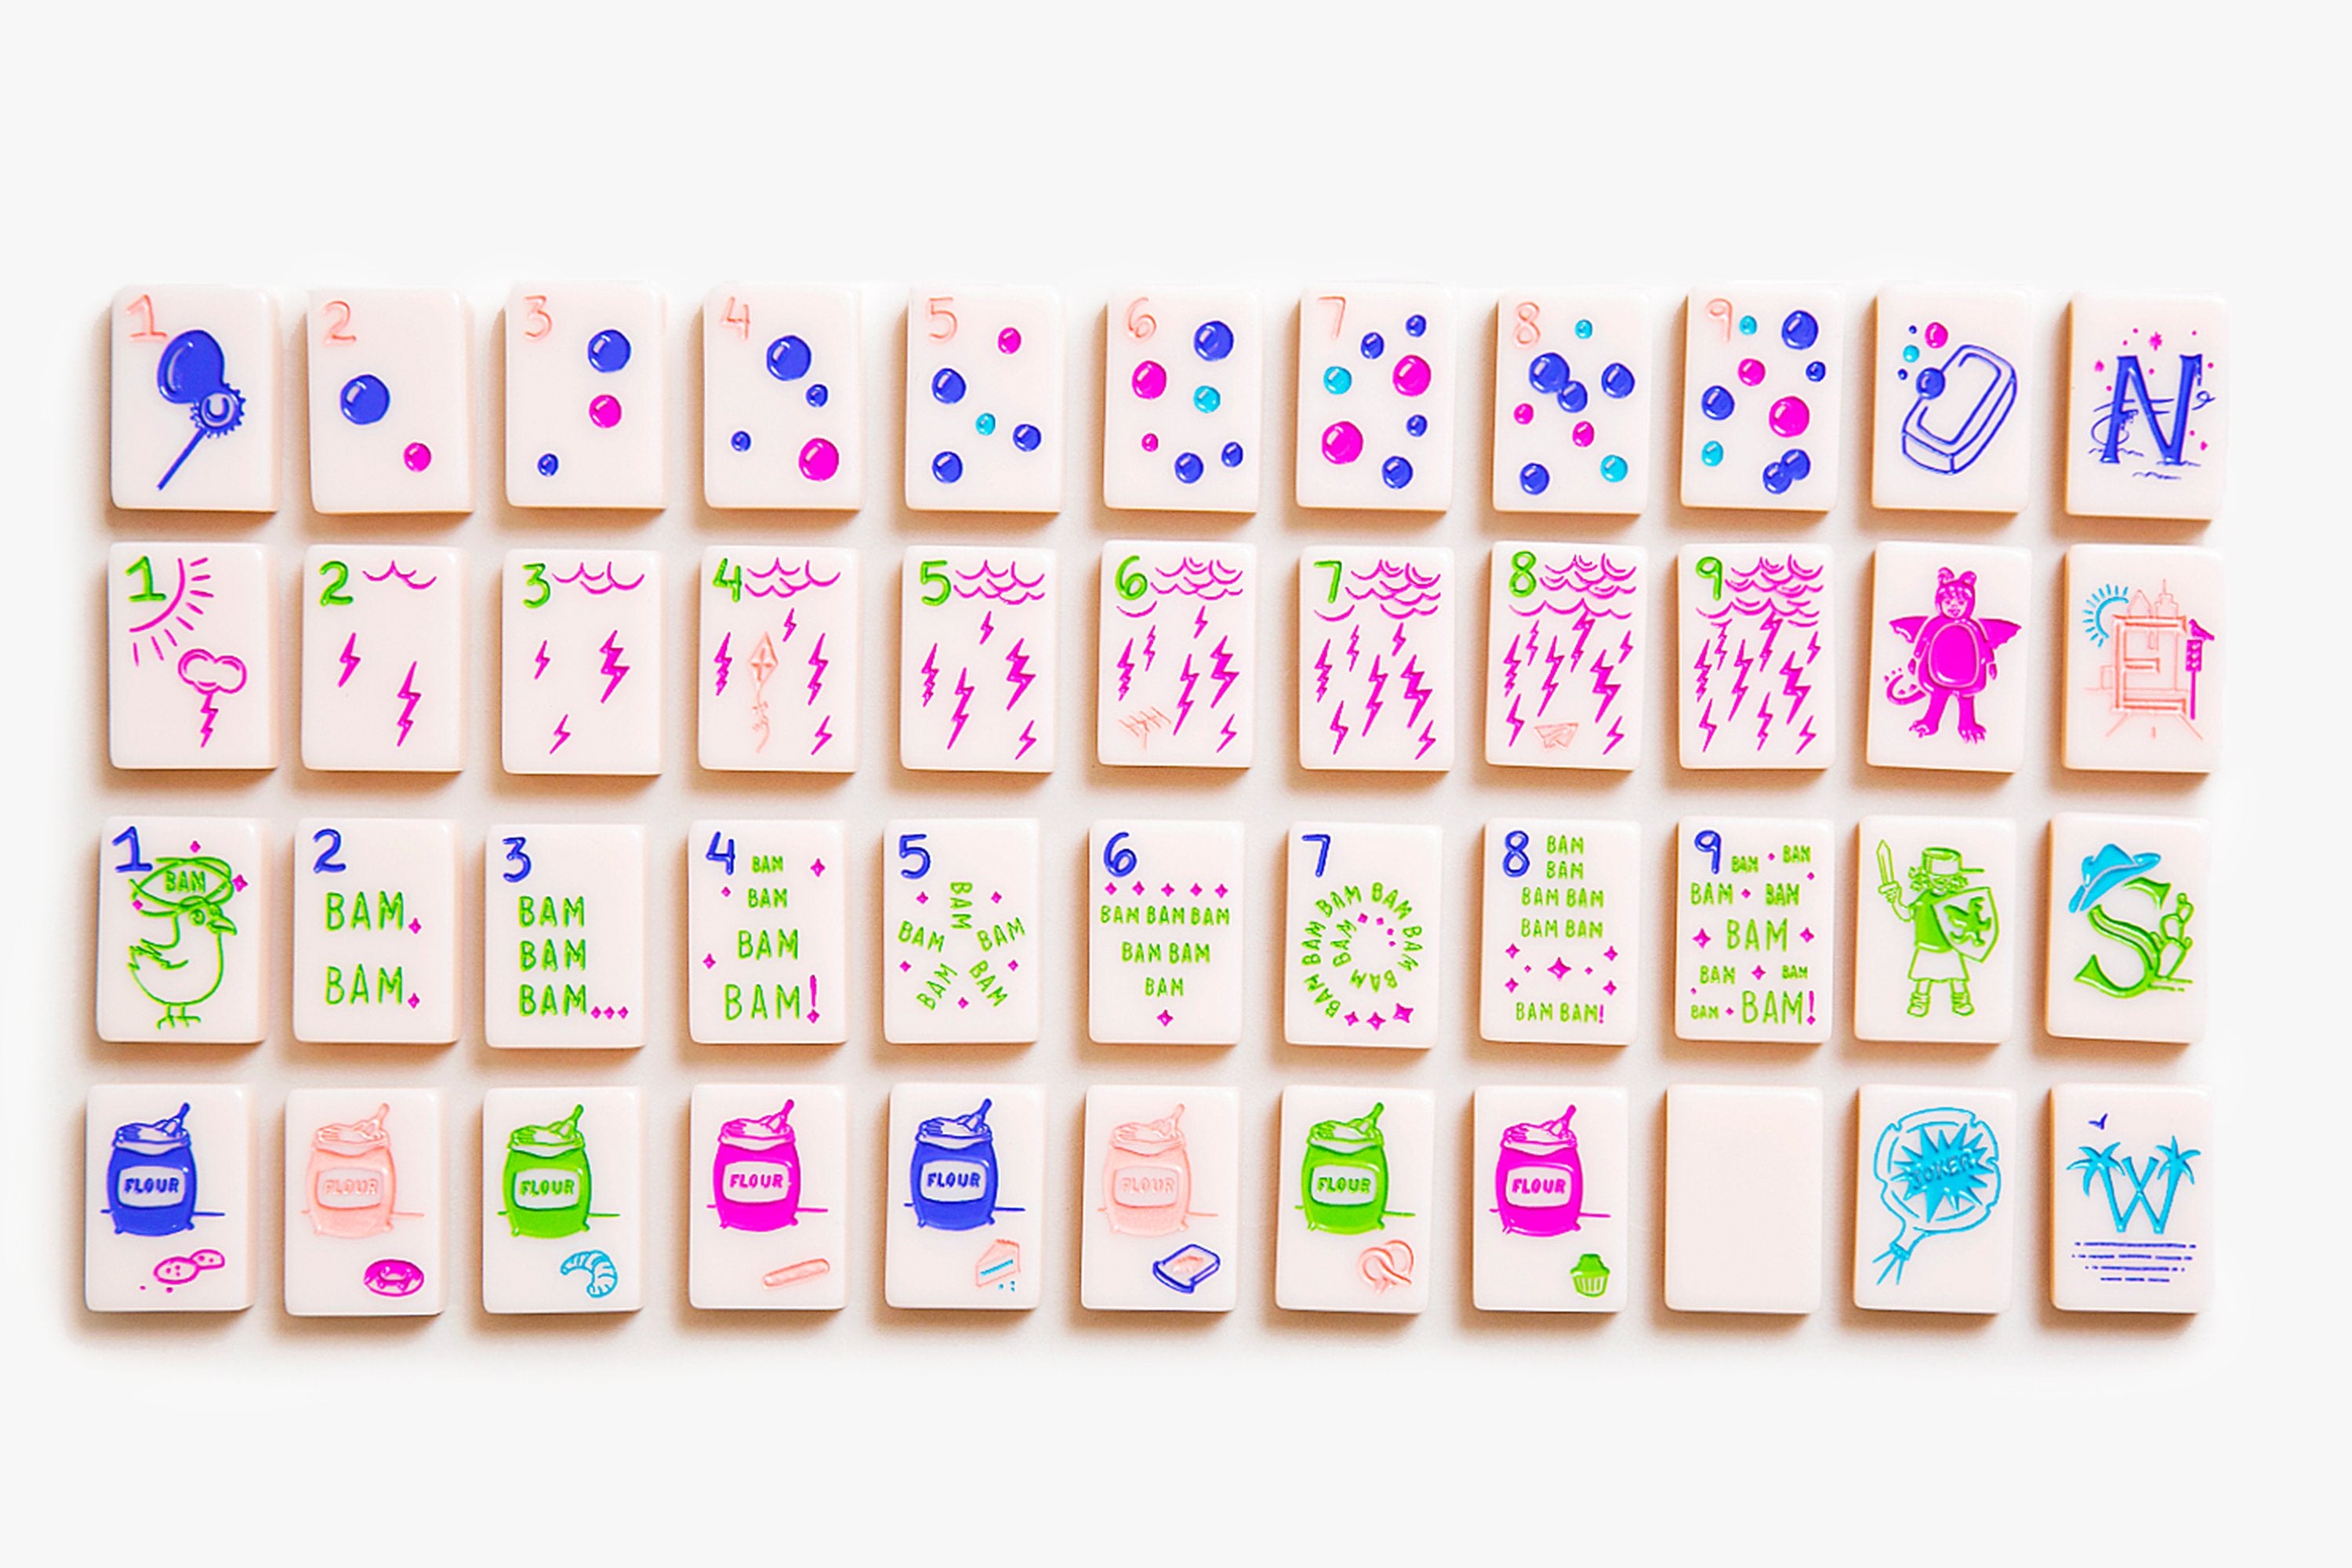 The Botanical Line - Mahjong Tile Set - Newport Release – The